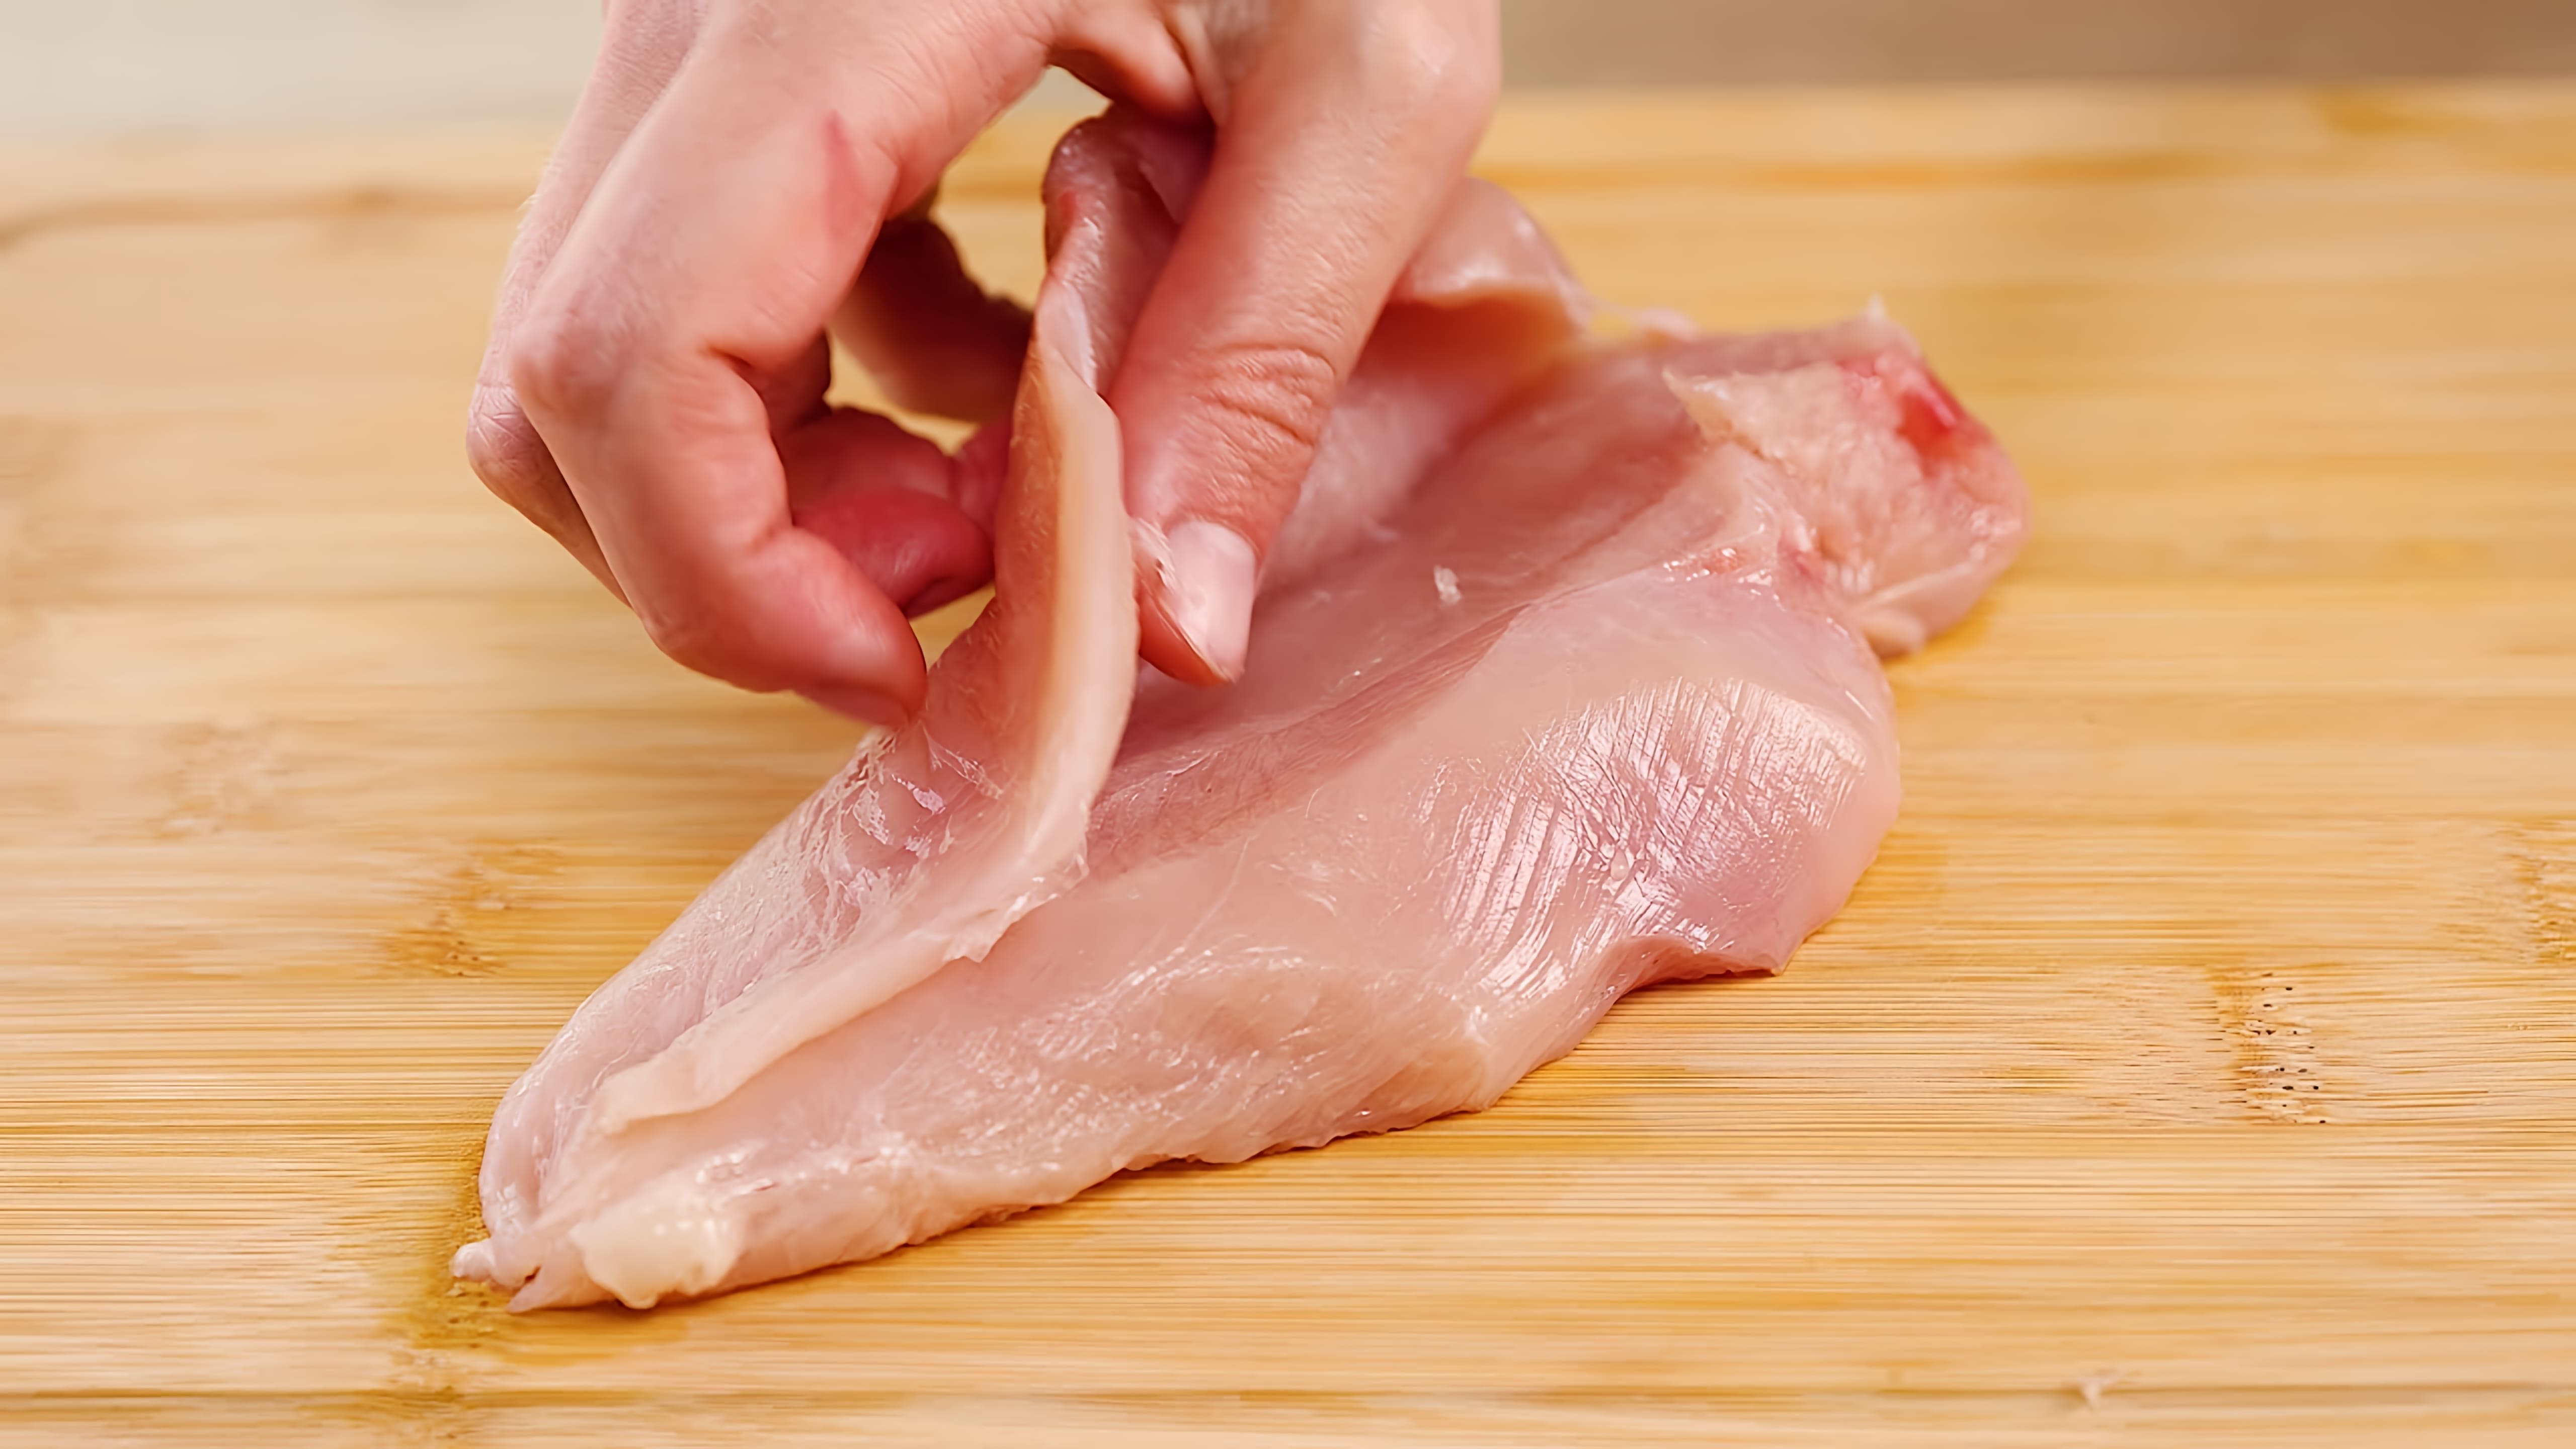 В этом видео показан рецепт приготовления куриного филе на каждый день